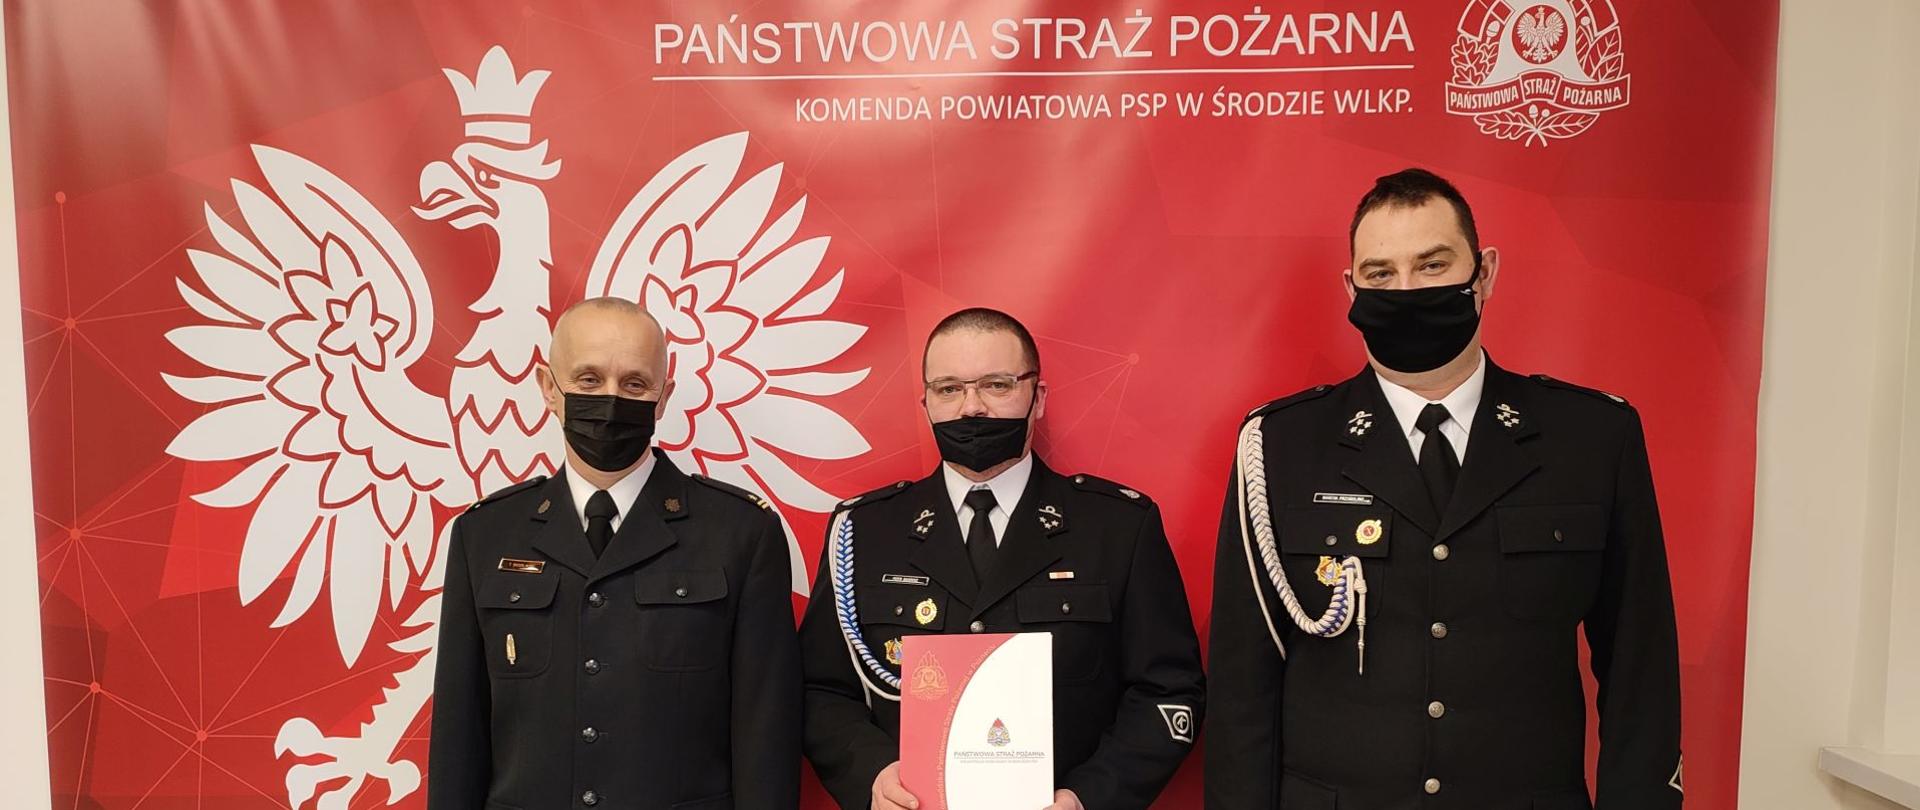 Wręczenie podziękowań dla OSP Koszuty, druhowie i Komendant Powiatowy PSP z listem 